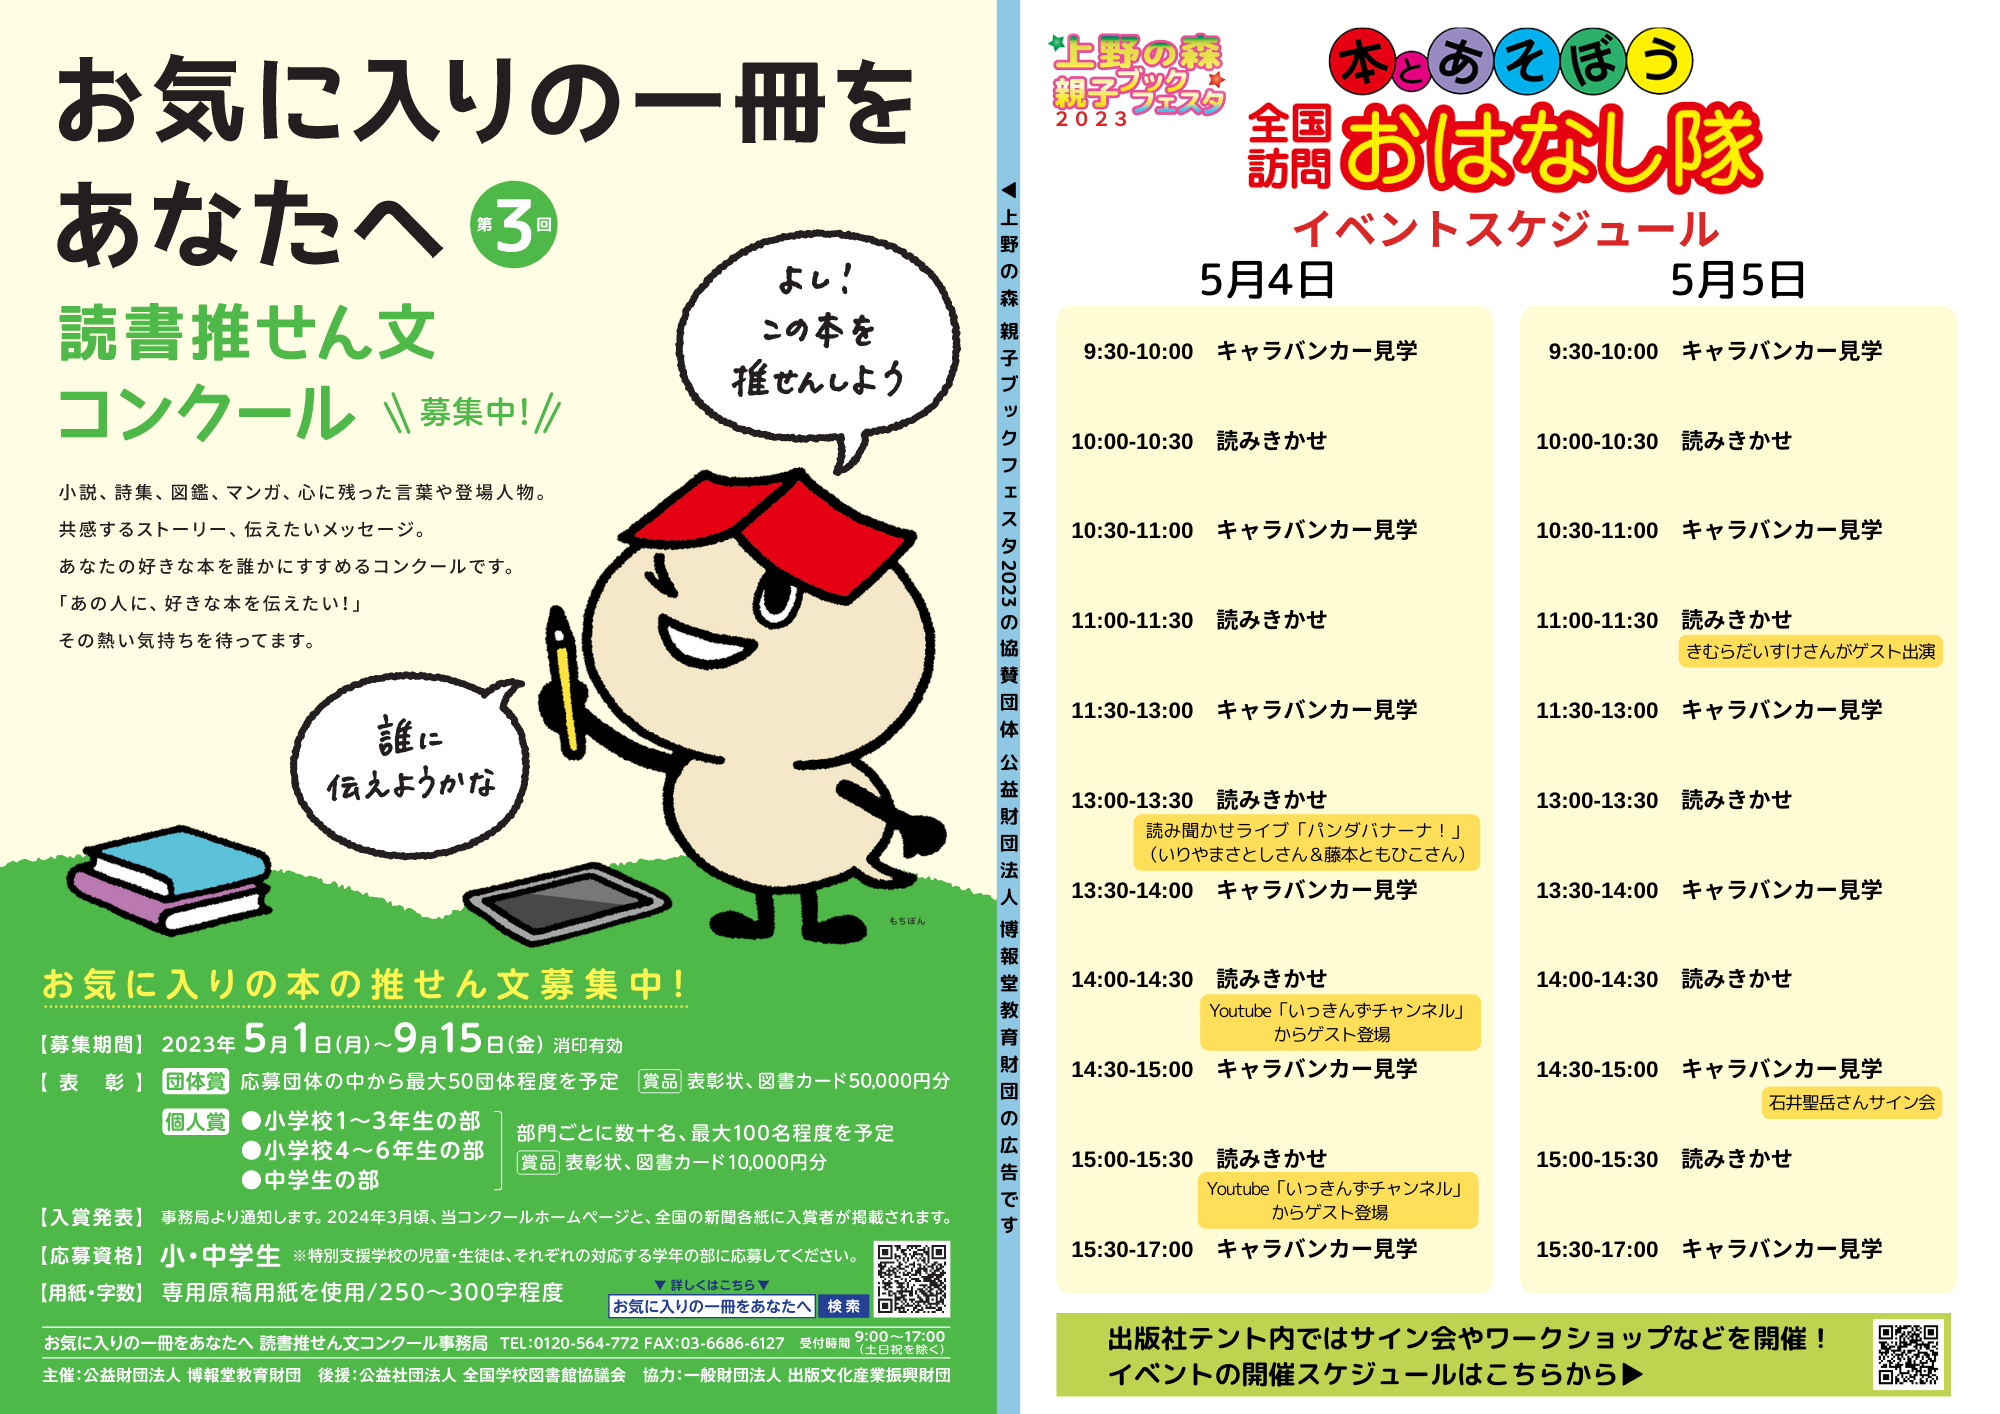 ◀︎上野の森 親子ブックフェスタ2023の協賛団体の広告です.png